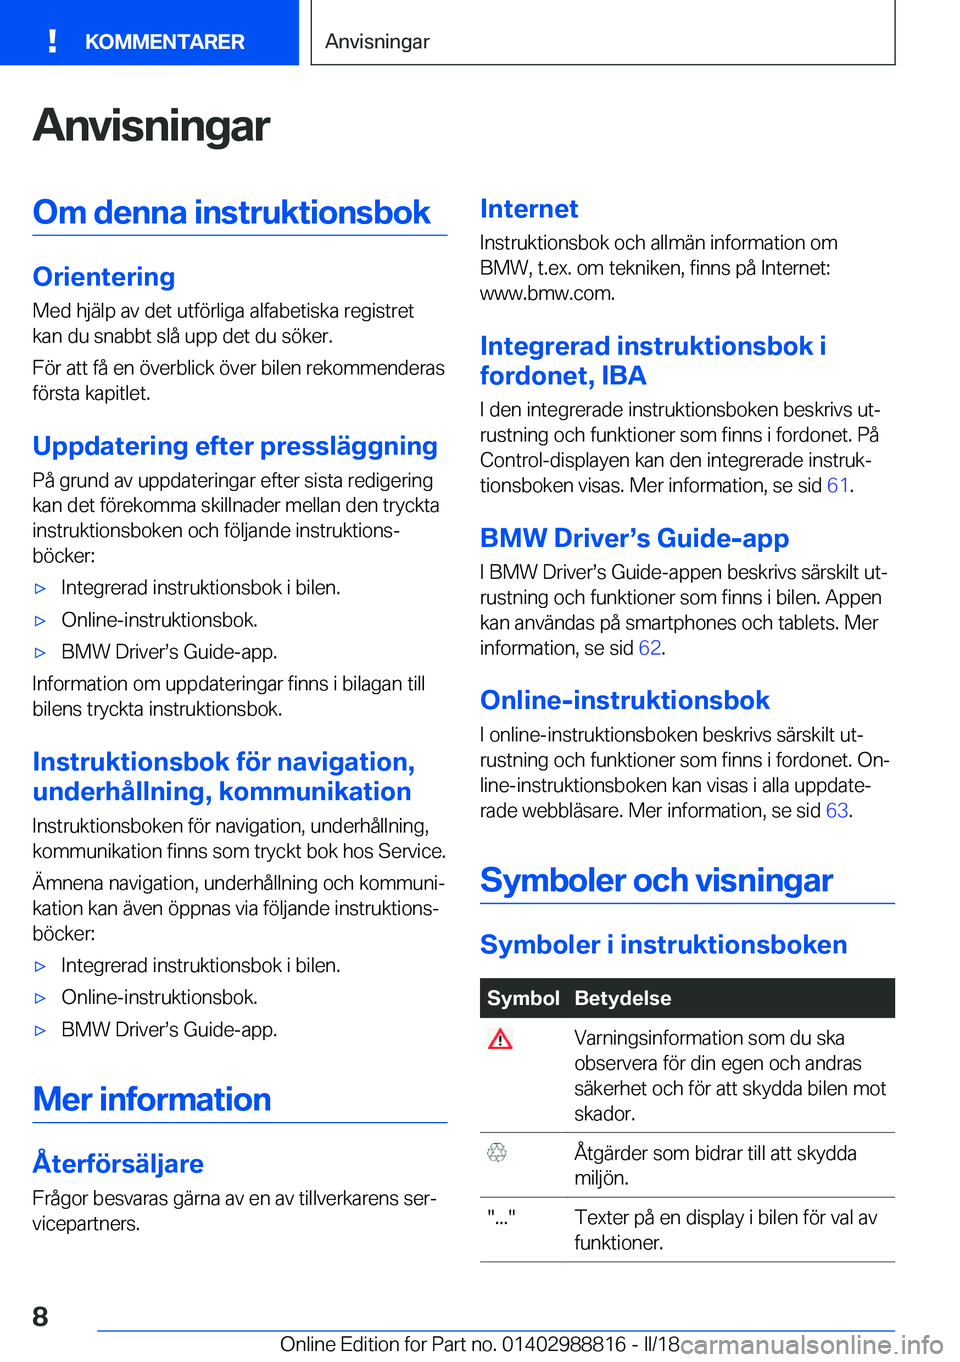 BMW X5 2018  InstruktionsbÖcker (in Swedish) �A�n�v�i�s�n�i�n�g�a�r�O�m��d�e�n�n�a��i�n�s�t�r�u�k�t�i�o�n�s�b�o�k
�O�r�i�e�n�t�e�r�i�n�g
�M�e�d� �h�j�ä�l�p� �a�v� �d�e�t� �u�t�f�